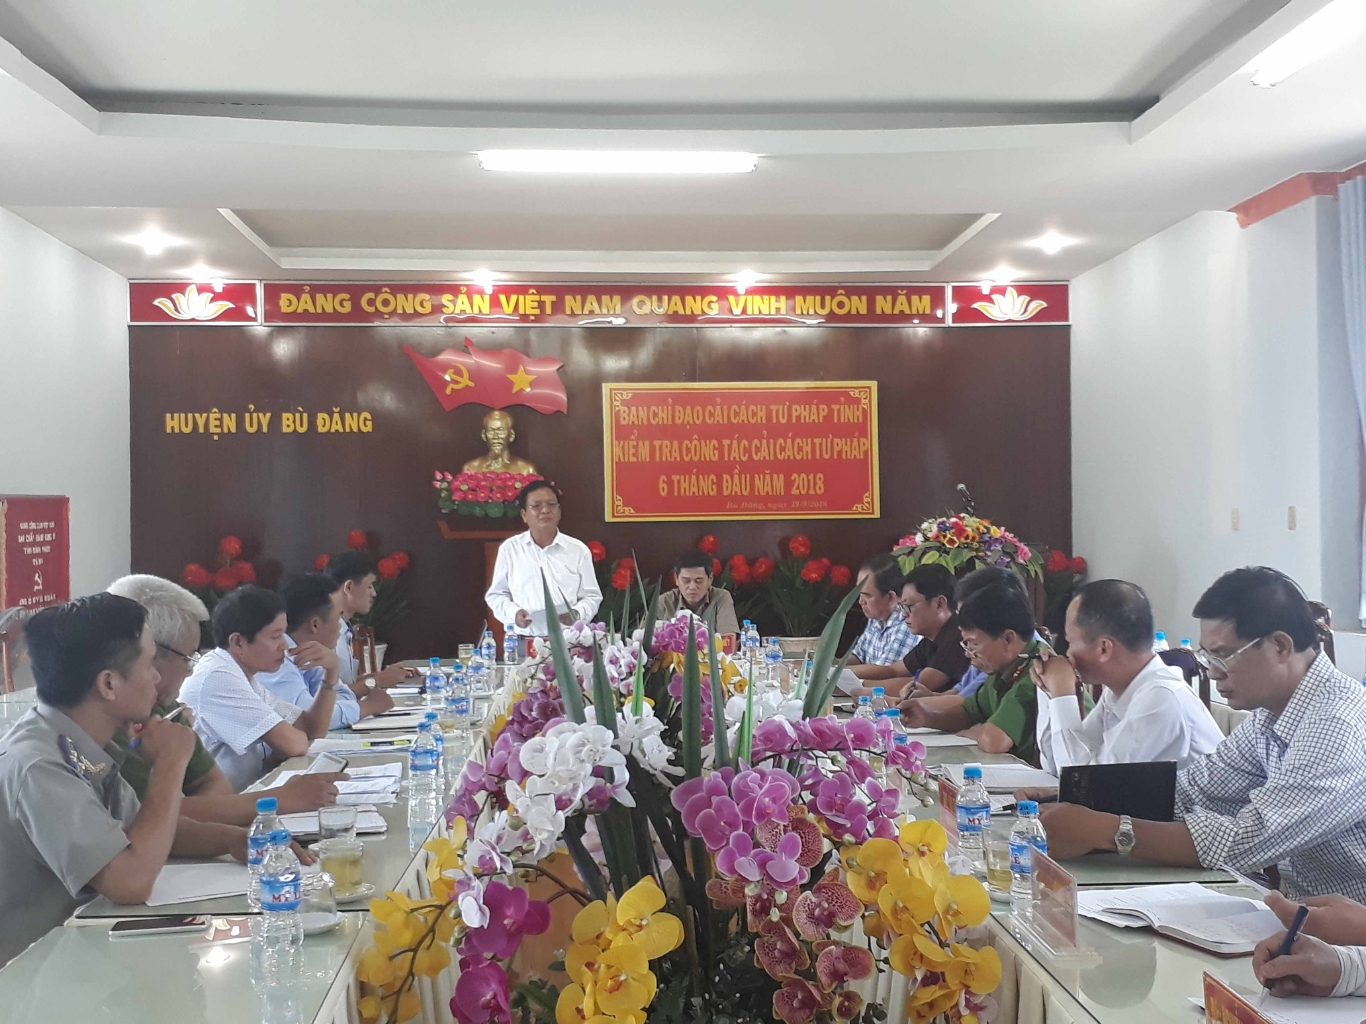 Ông Lê Văn Nuy   UV BTVTU  Trưởng ban Nội chính Tỉnh uỷ phát biểu tại buổi kiểm tra công tác CCTP tại huyện Bù Đăng